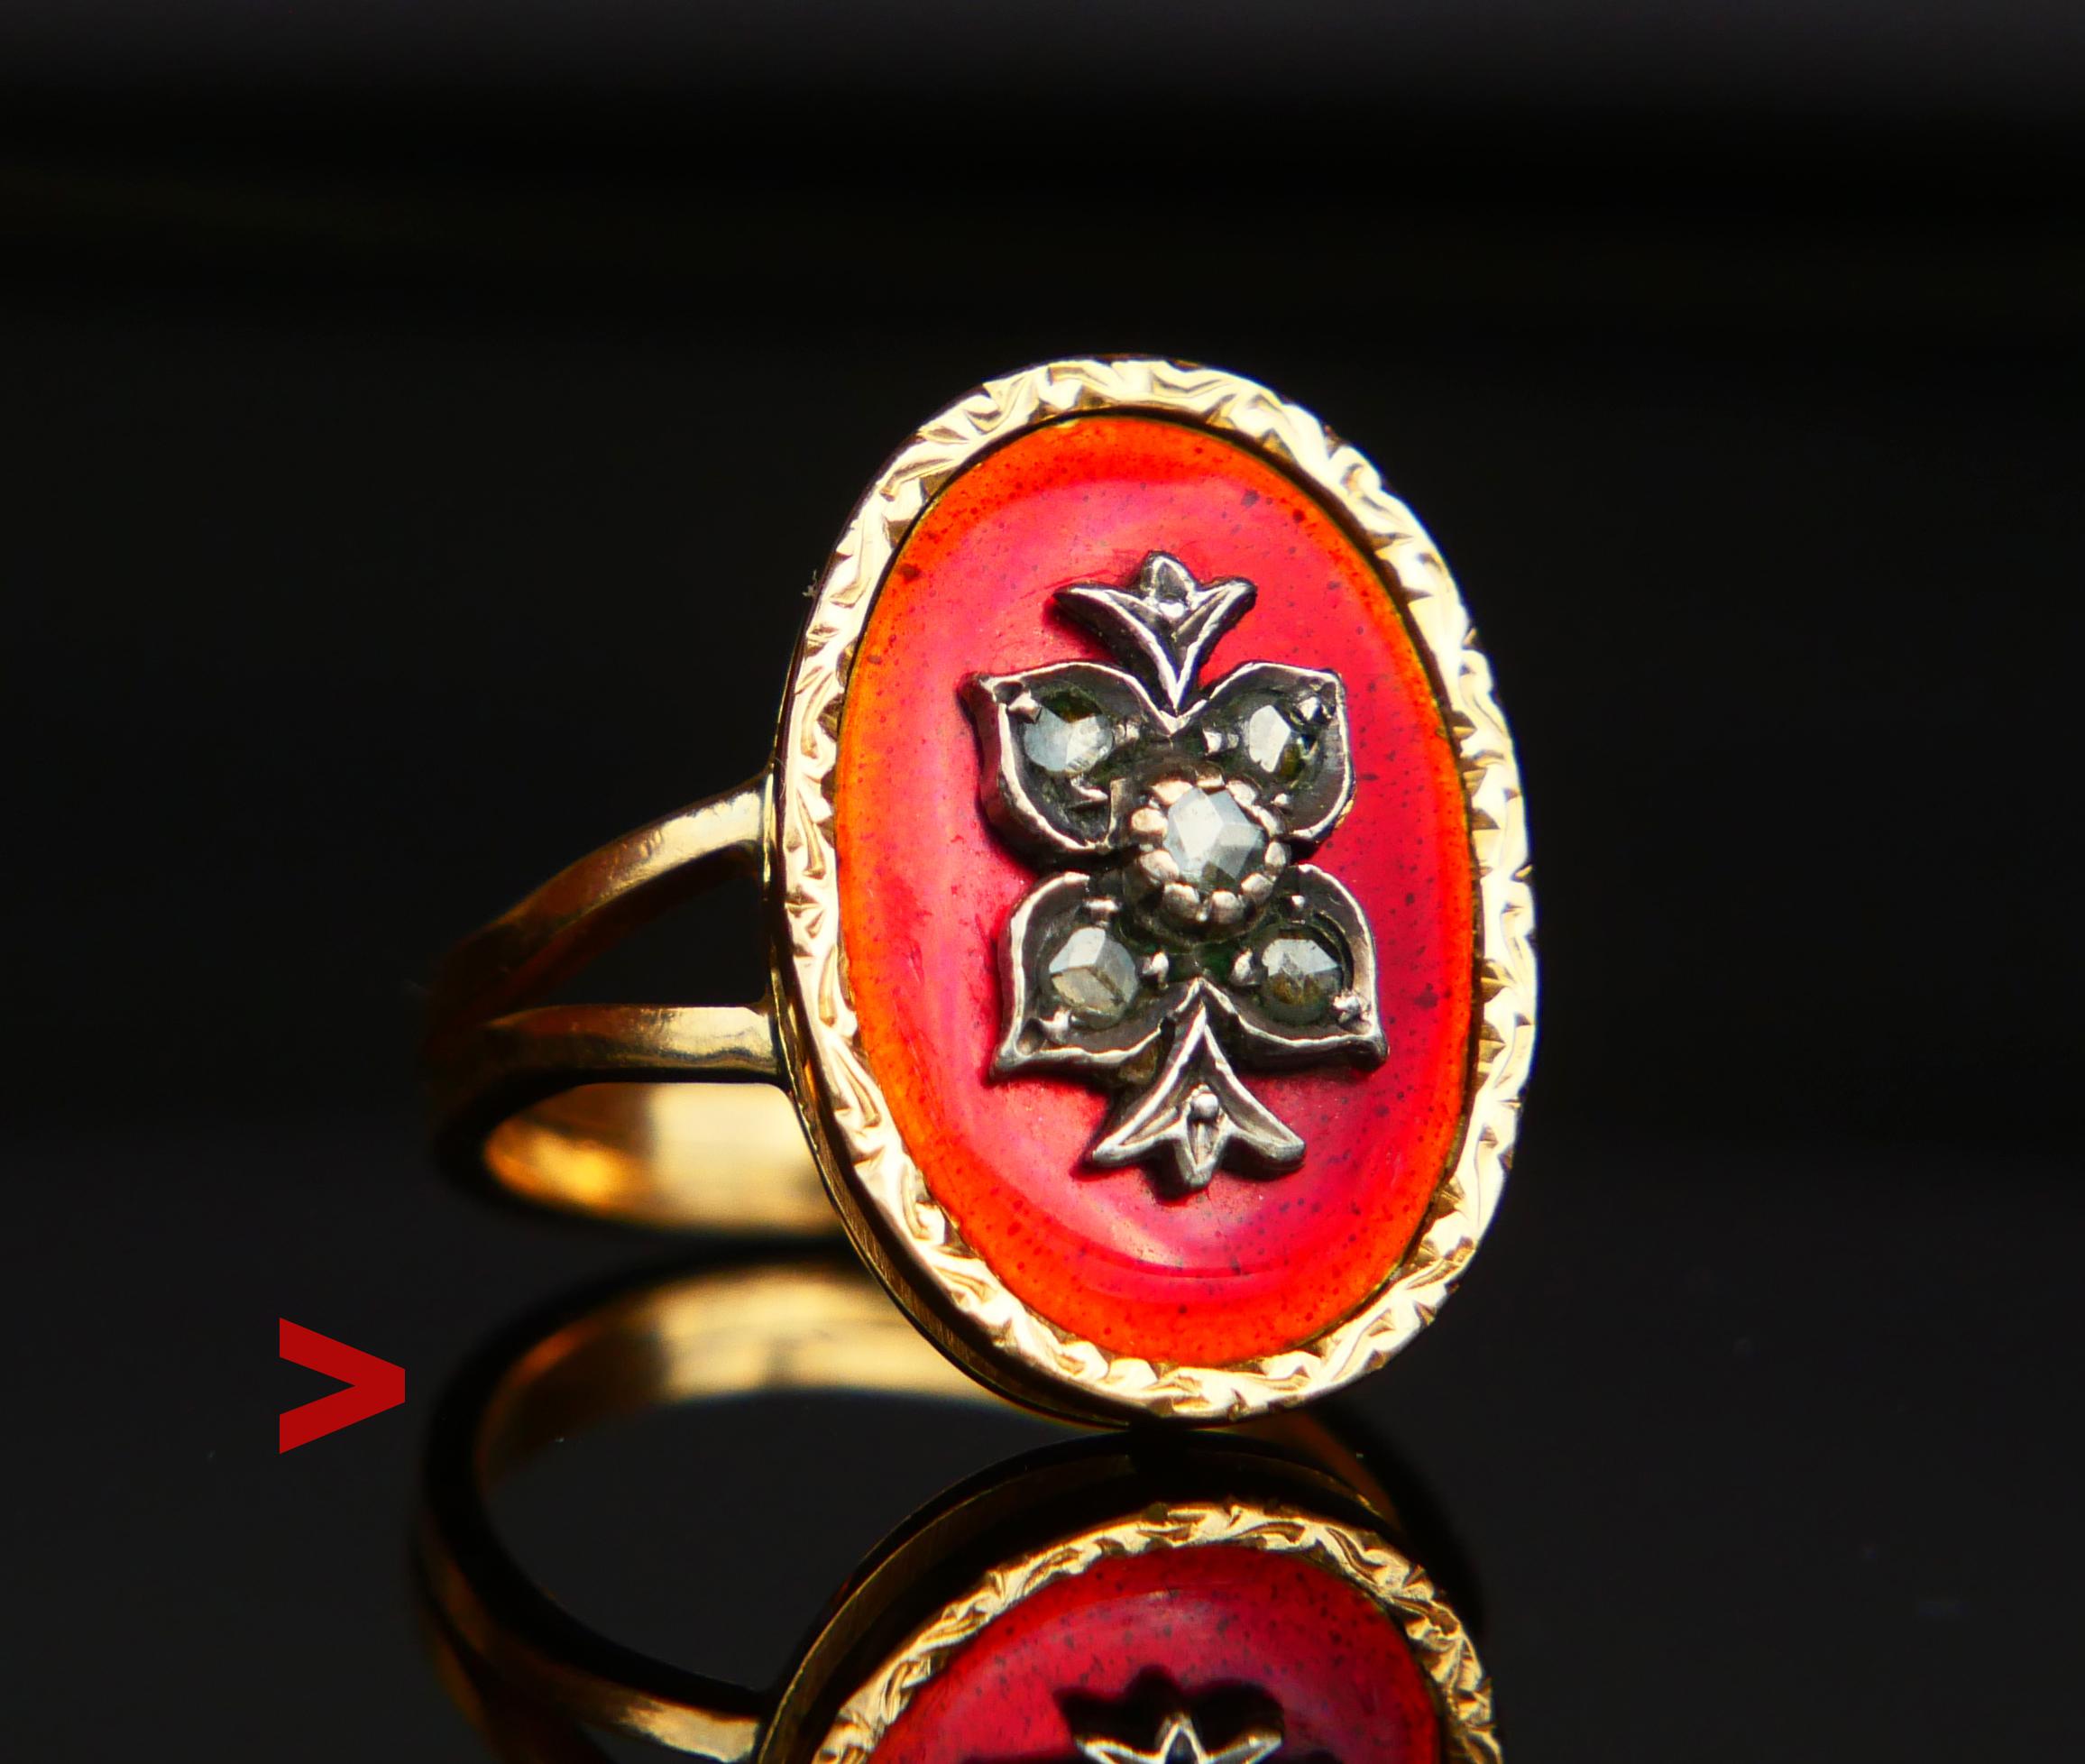 Altrussischer oder finnischer Handring - hergestellt zwischen dem späten 19. und frühen 20. Jahrhundert. Florales Ornament mit Diamanten im Rosenschliff auf durchscheinendem und gesprenkeltem roten Emaillehintergrund. Ab 1775 wurde Goldschmuck mit